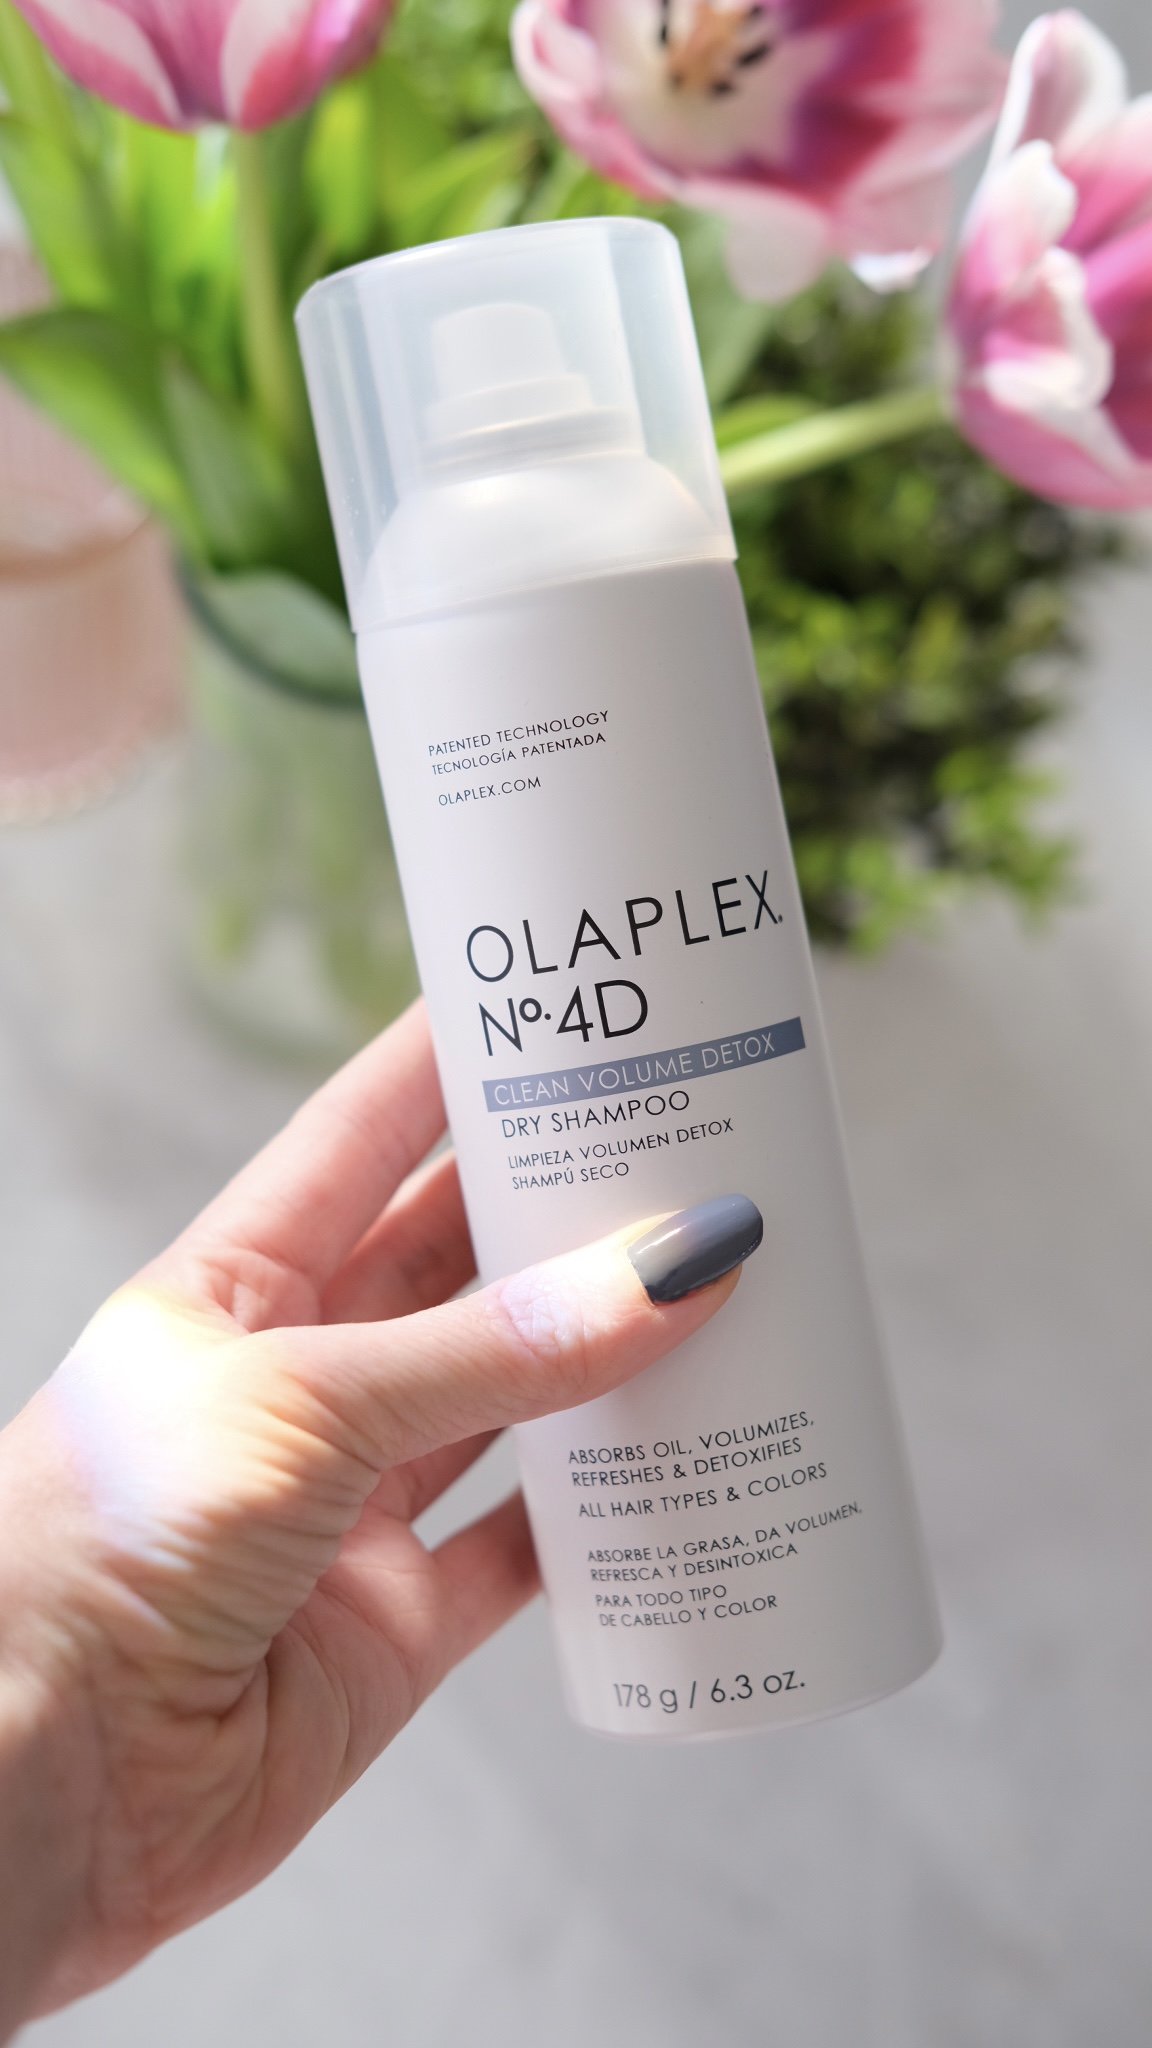 Olaplex 4D review. Olaplex dry shampoo reviews